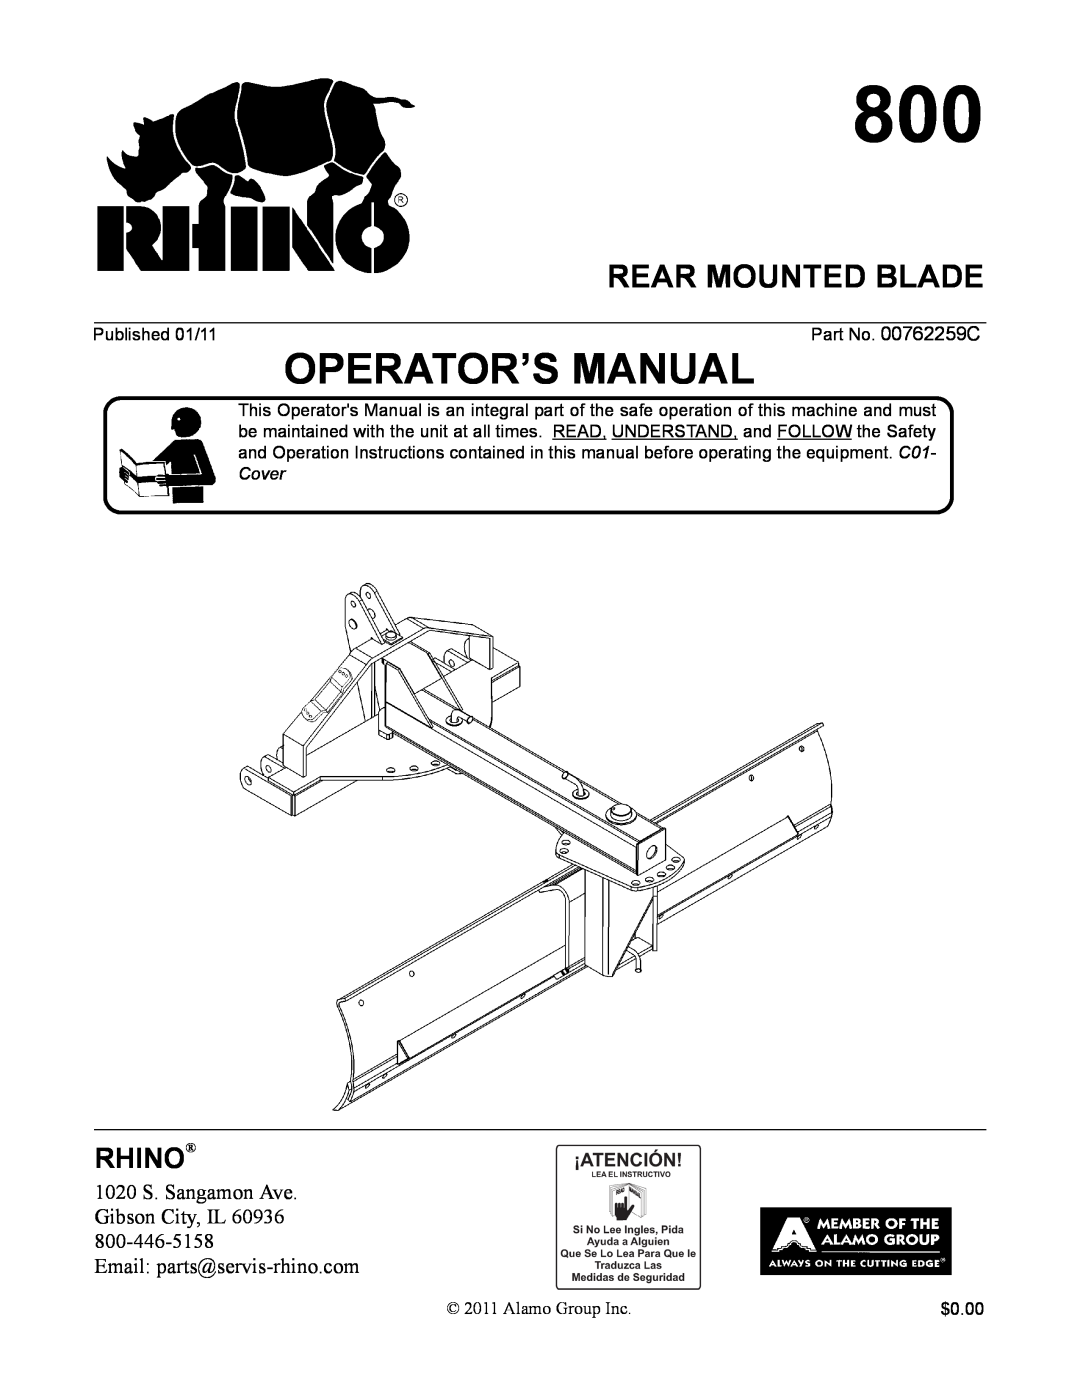 Alamo 800 manual Rear Mounted Blade, Operator’S Manual, Rhino 